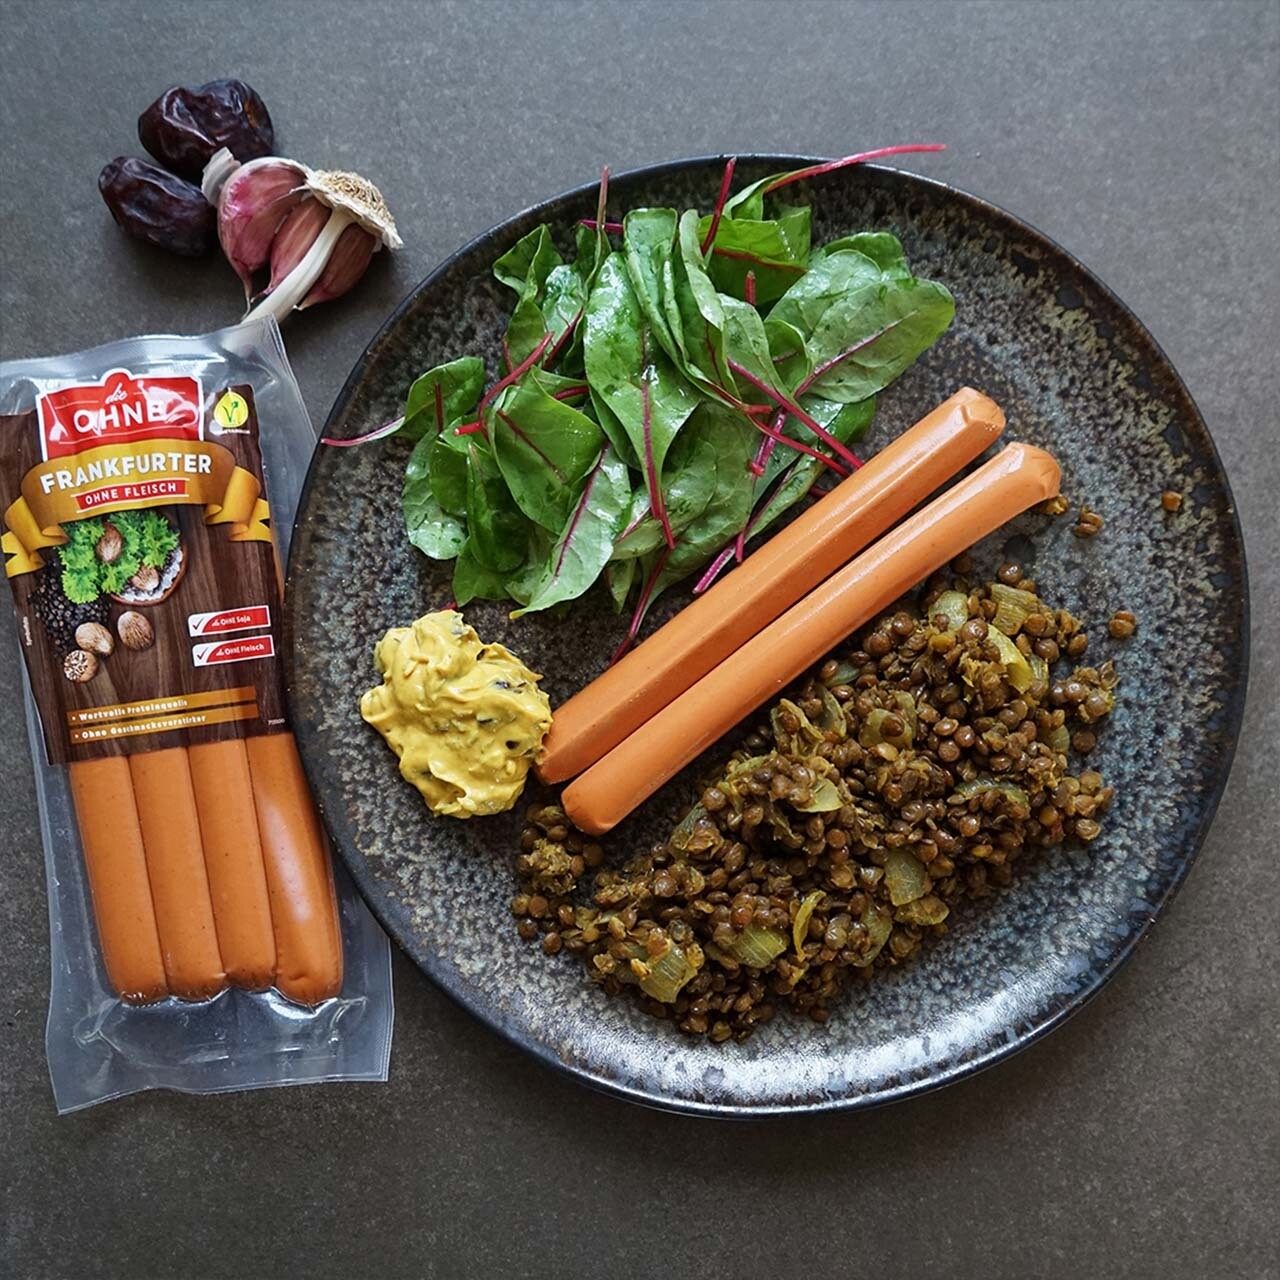 Orientalische Linsen mit vegetarischen Frankfurtern, Dattel-Senf und Salat